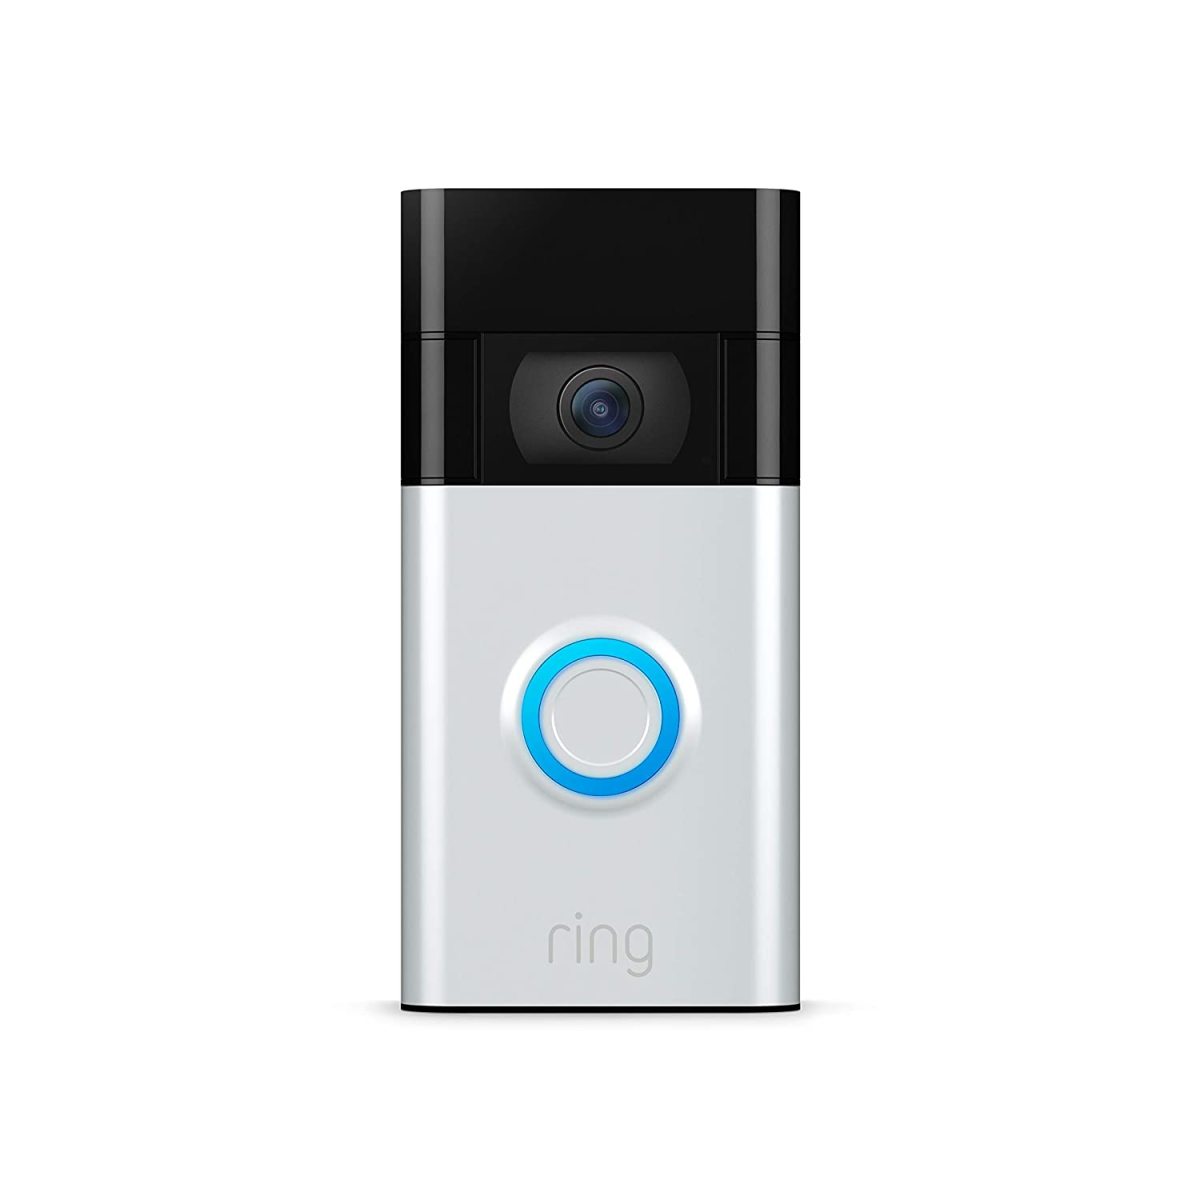 ring video doorbell 2020 release